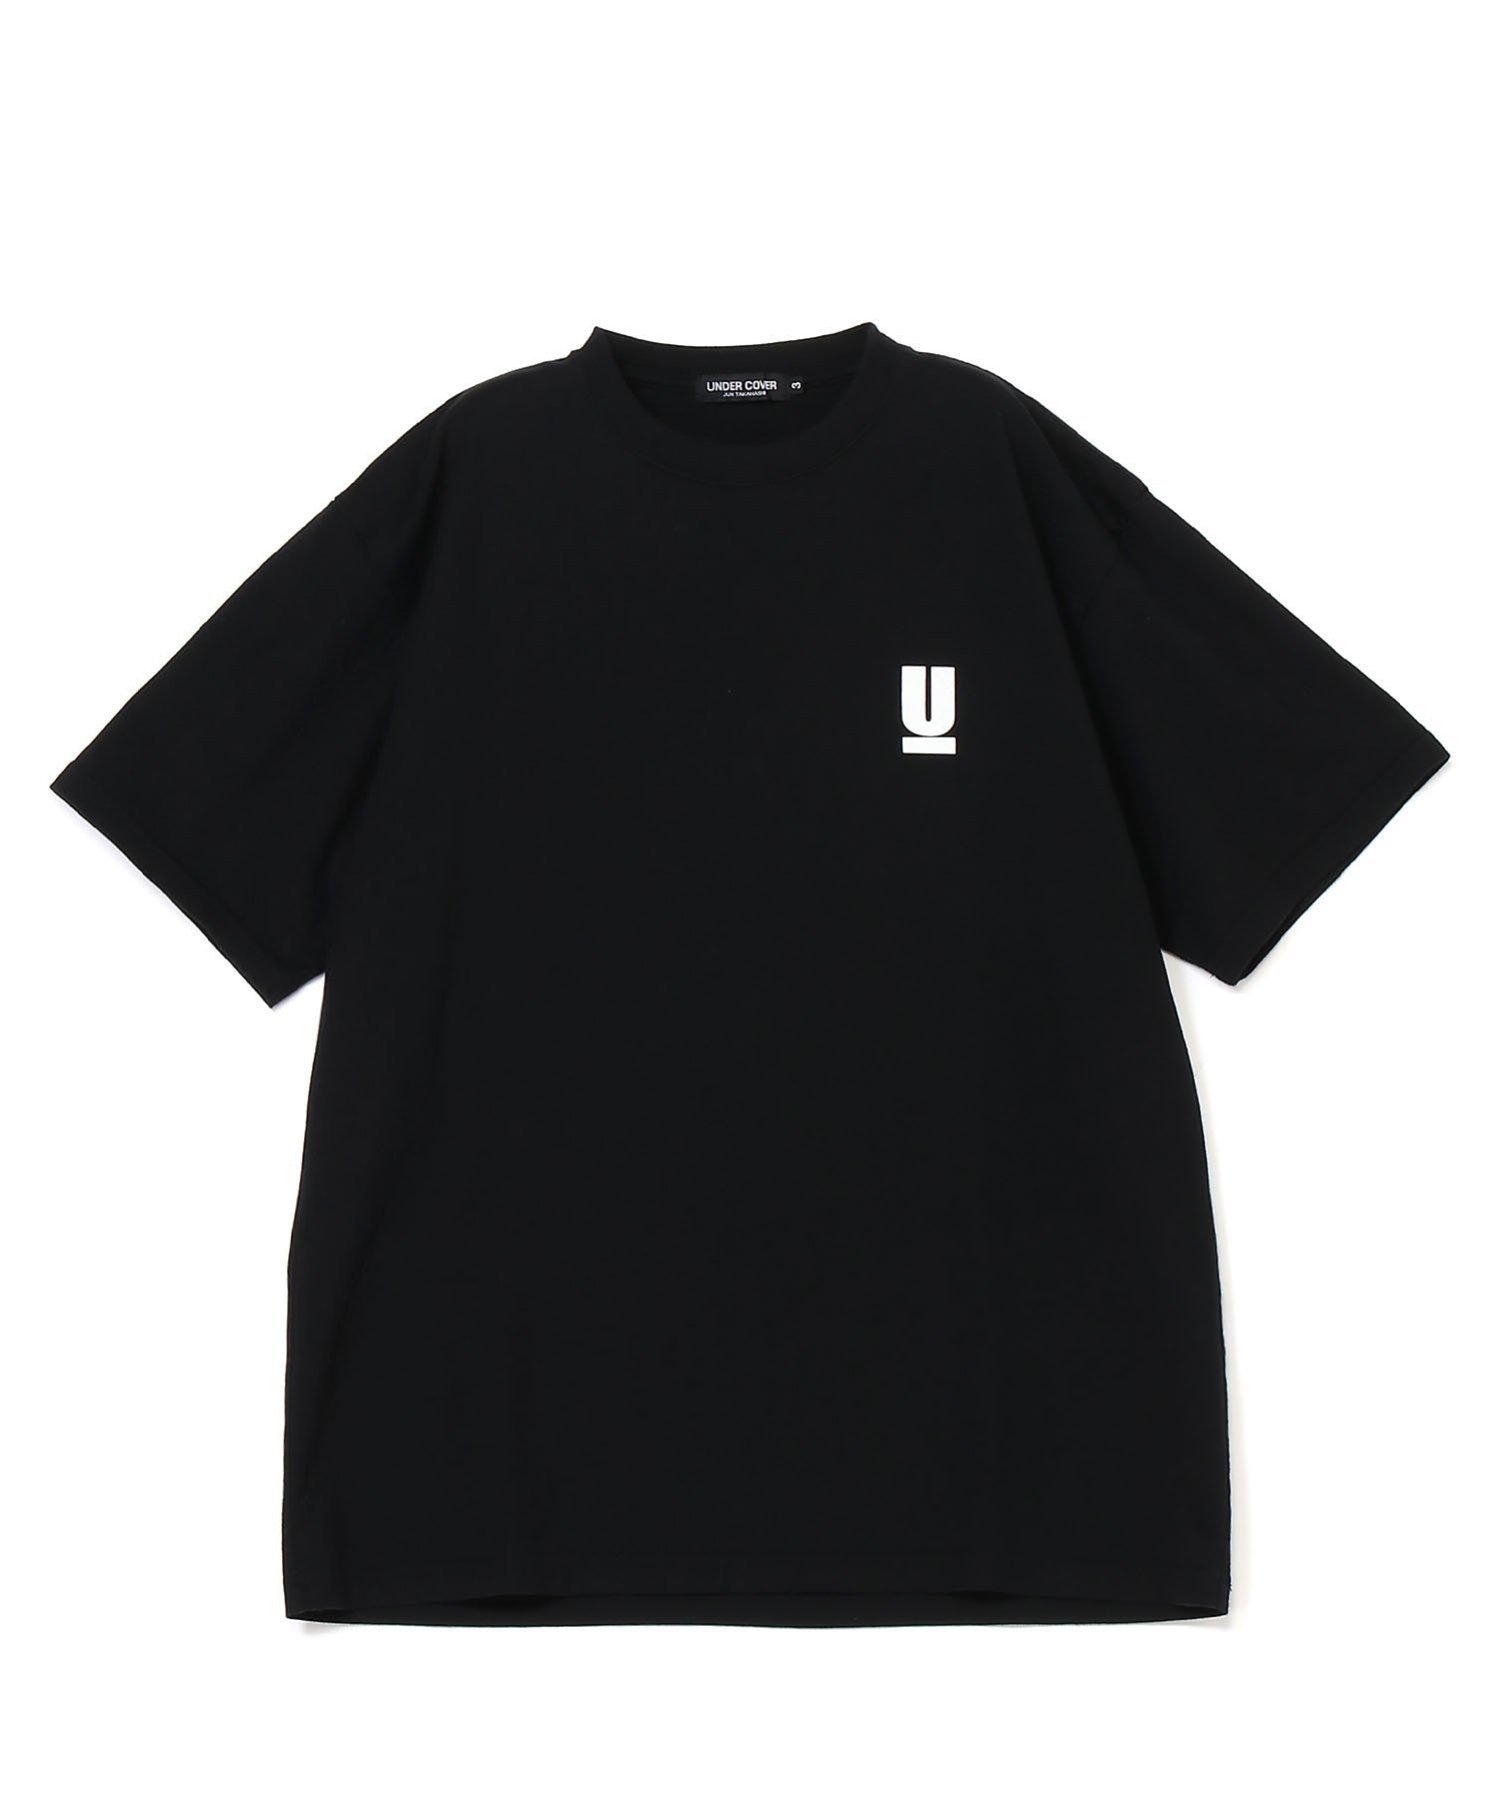 UNDERCOVER UB0D3803 アンダーカバー トップス カットソー・Tシャツ ブラック ネイビー ホワイト